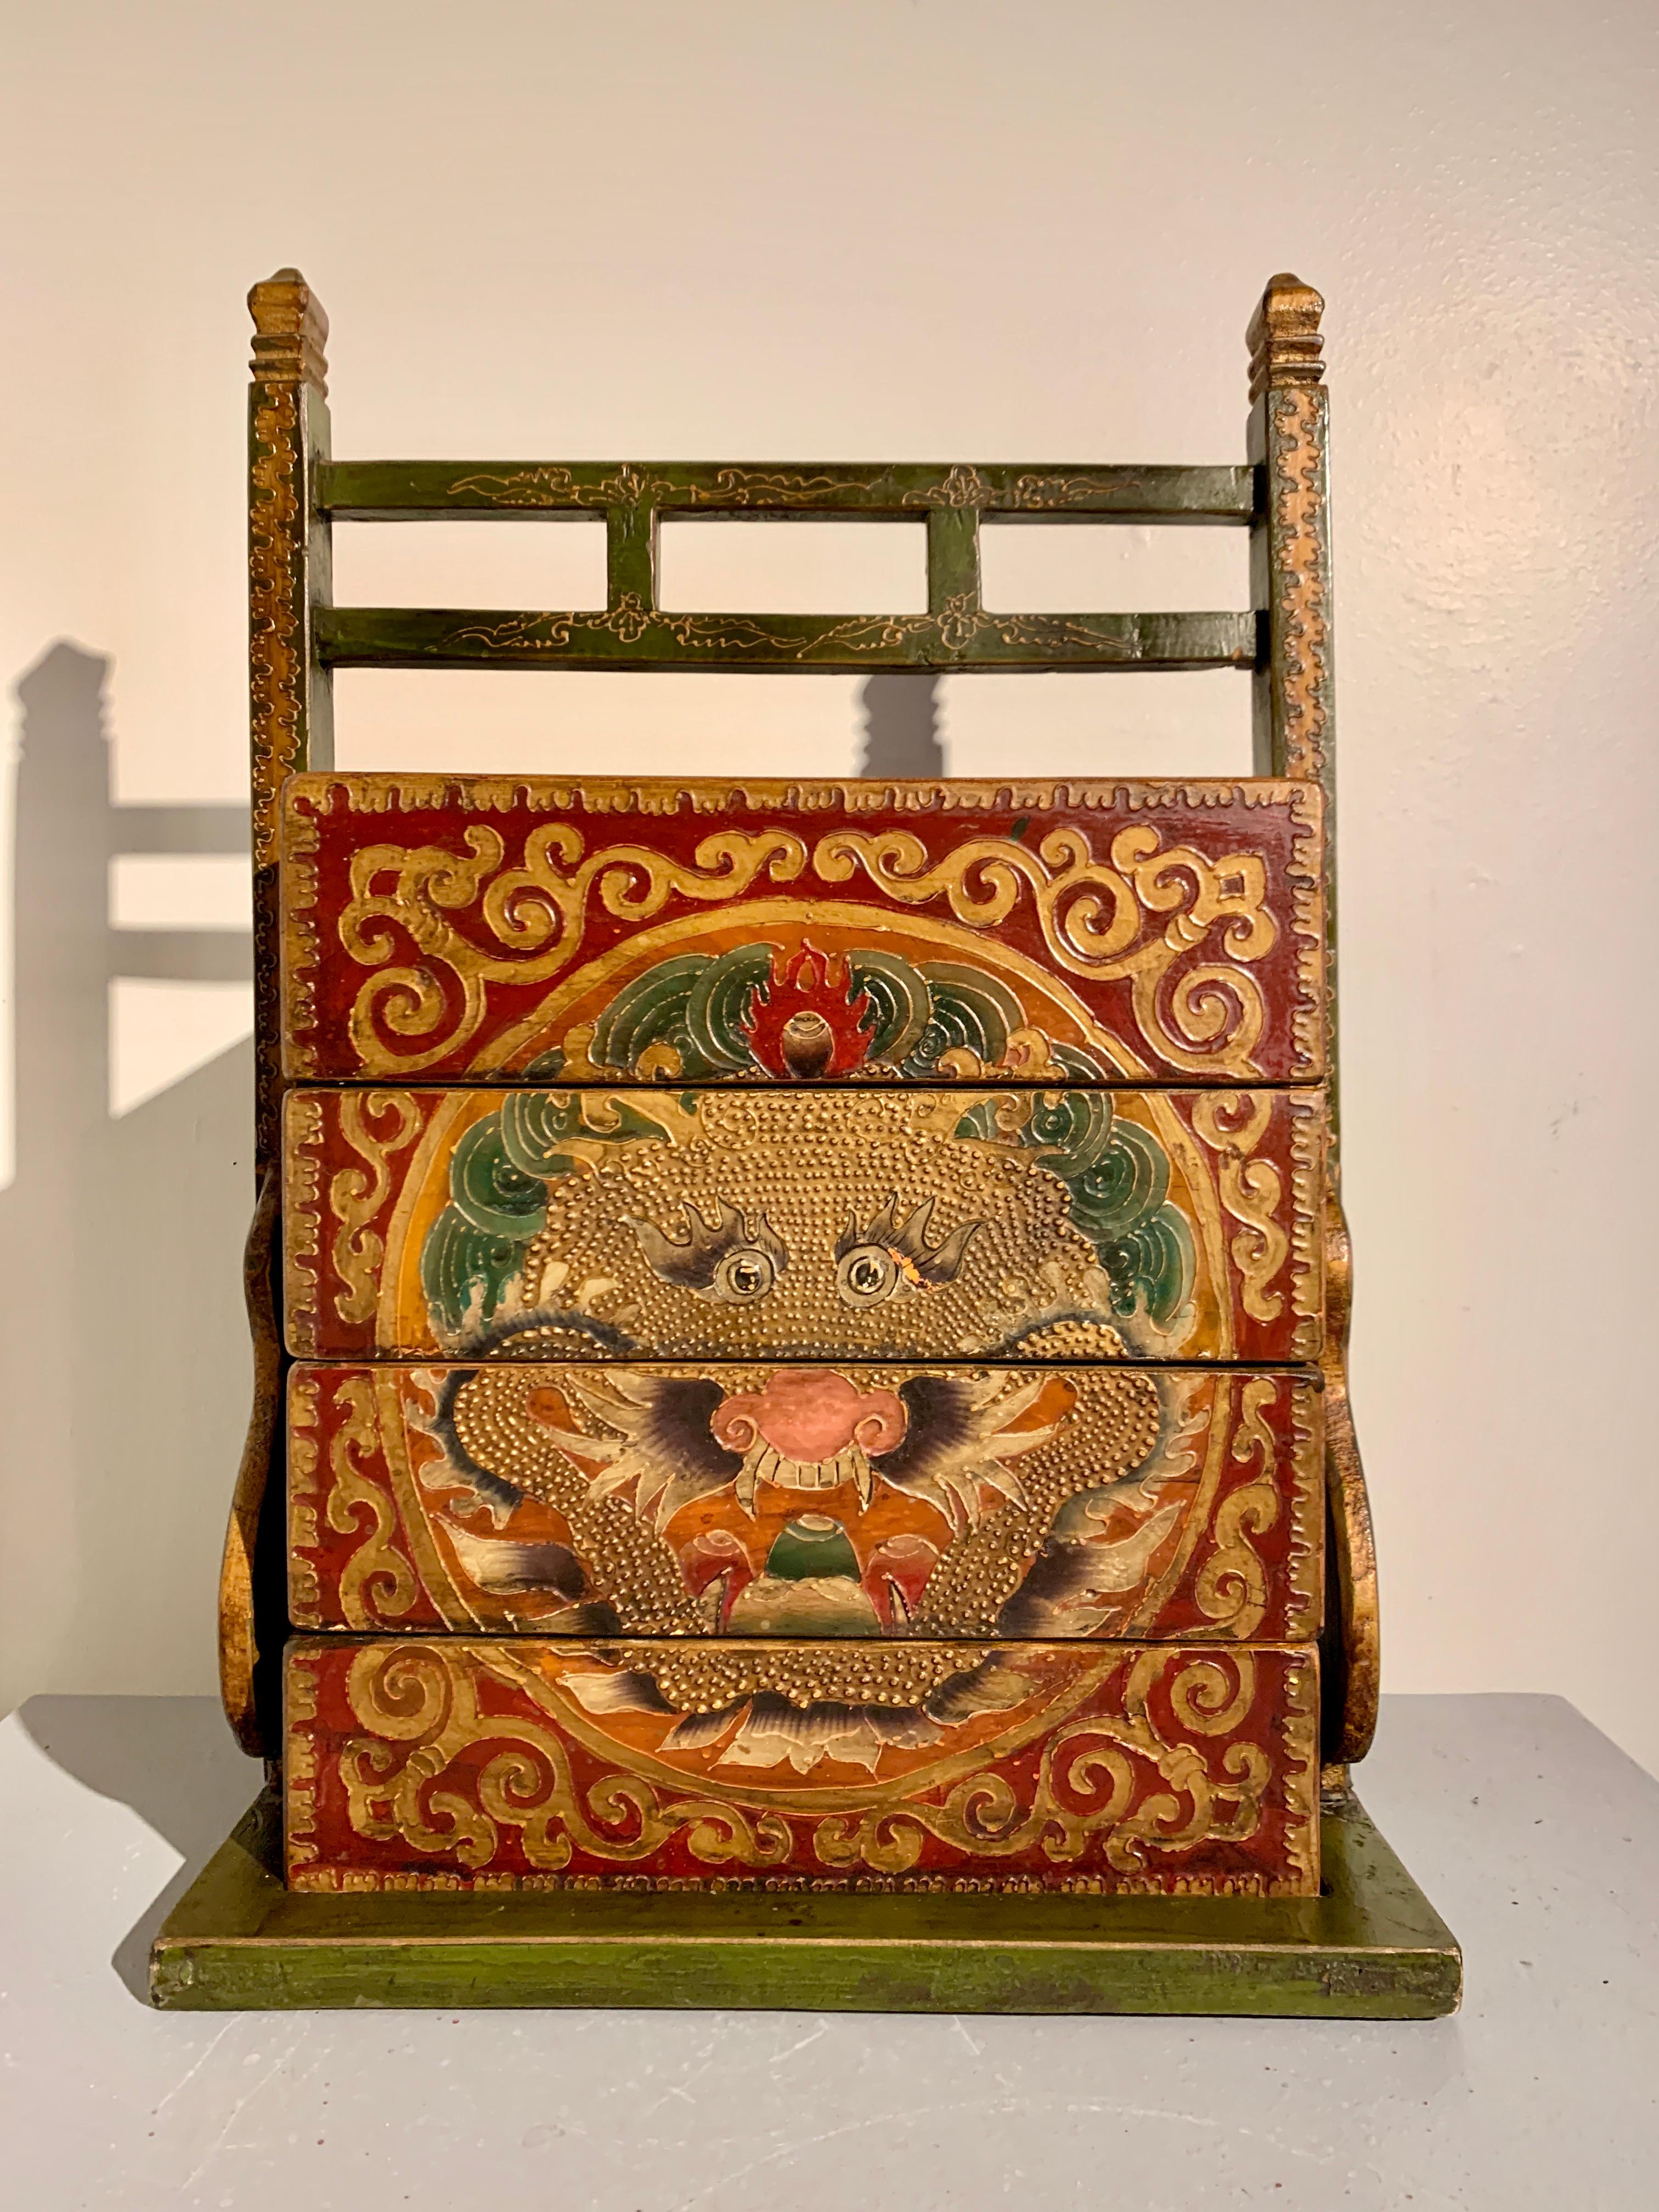 Eine hochdekorative chinesische, rot bemalte, stapelbare Picknickkiste und -träger, gemalt im tibetischen Stil, um 1990, China.

Die große bemalte und strukturierte Picknickkiste aus Holz besteht aus drei Schalen oder Boxen und einem Deckel, die